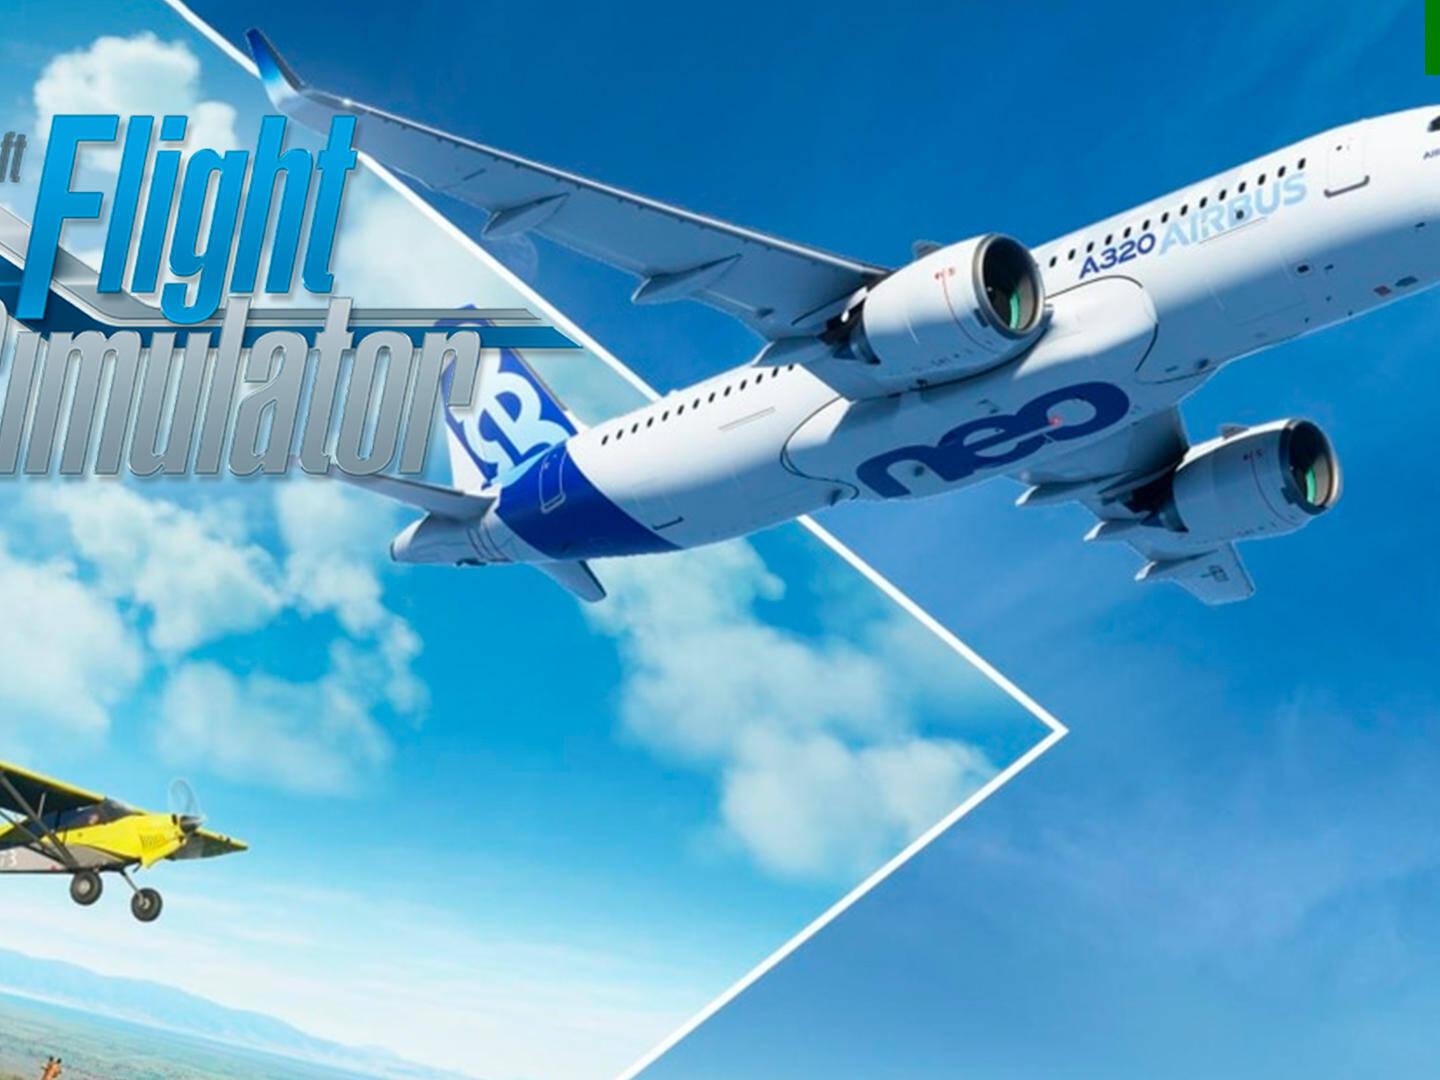 Microsoft Flight Simulator: el videojuego de éxito convertido en metaverso